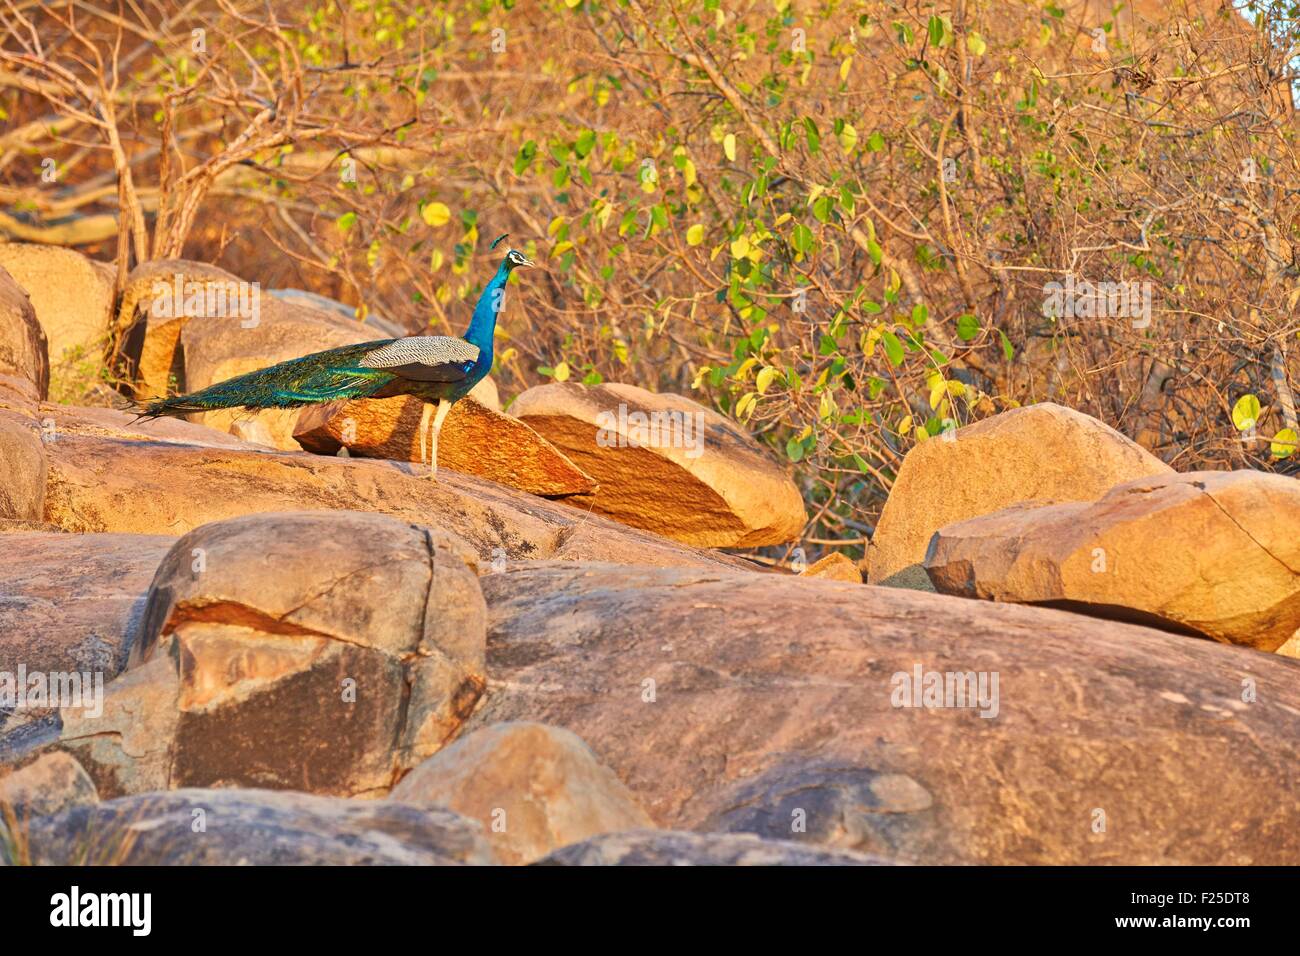 Asia, India, Karnataka, Sandur Mountain Range, Indian Peafowl or Blue Peafowl (Pavo cristatus), male Stock Photo